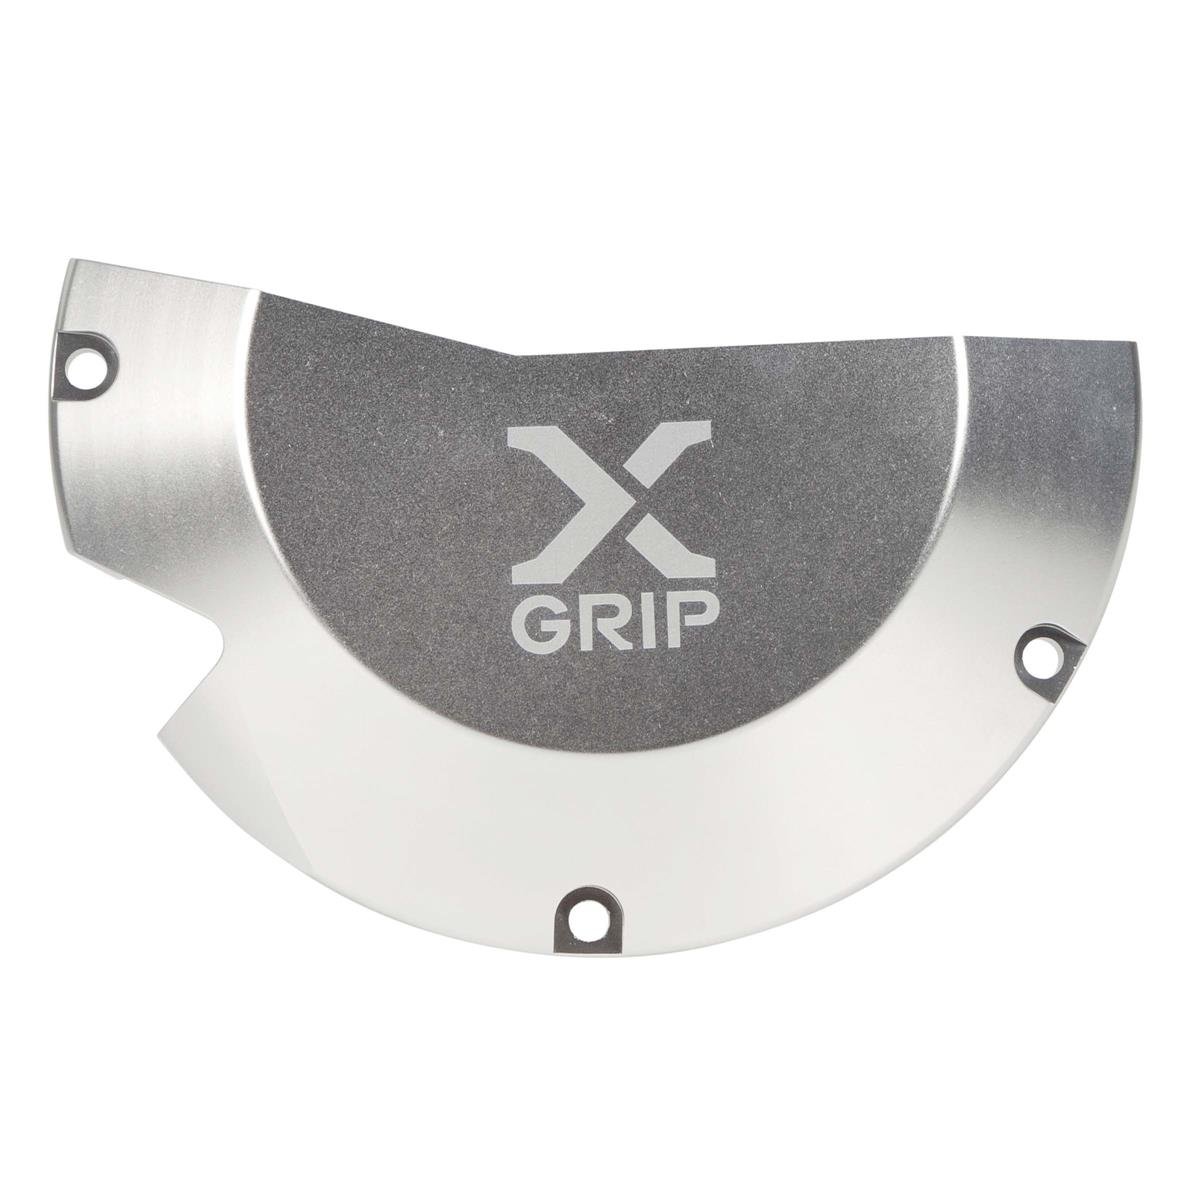 X-Grip Protezione Frizione Clutch Cover Guard Beta RR 250/300, XTrainer 18-20, Argento